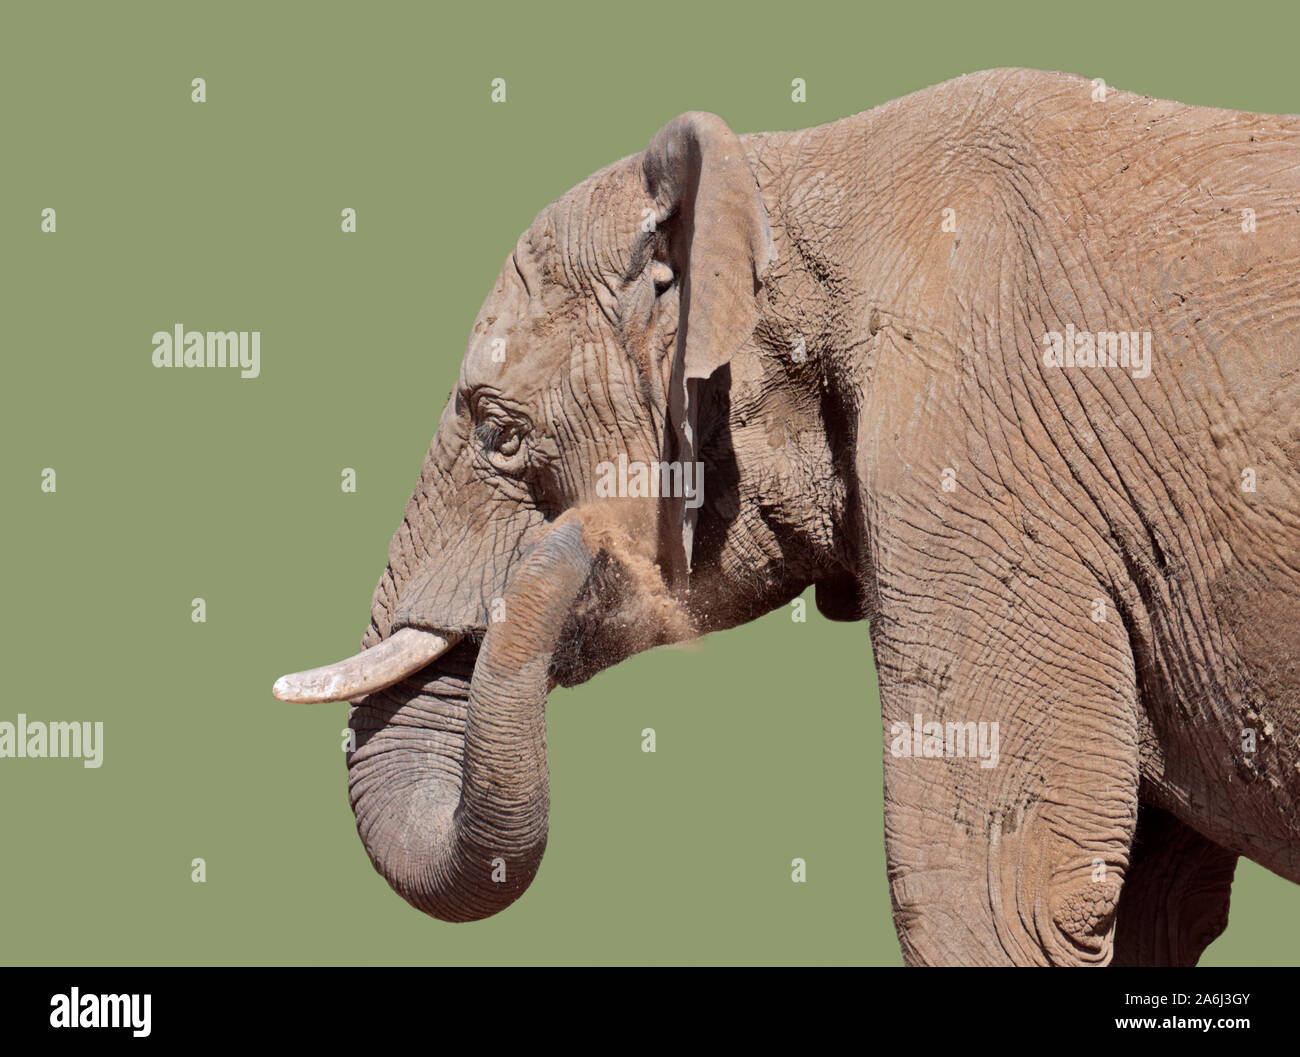 Asiatic Elephant (elephas maximus) sand bathing Stock Photo